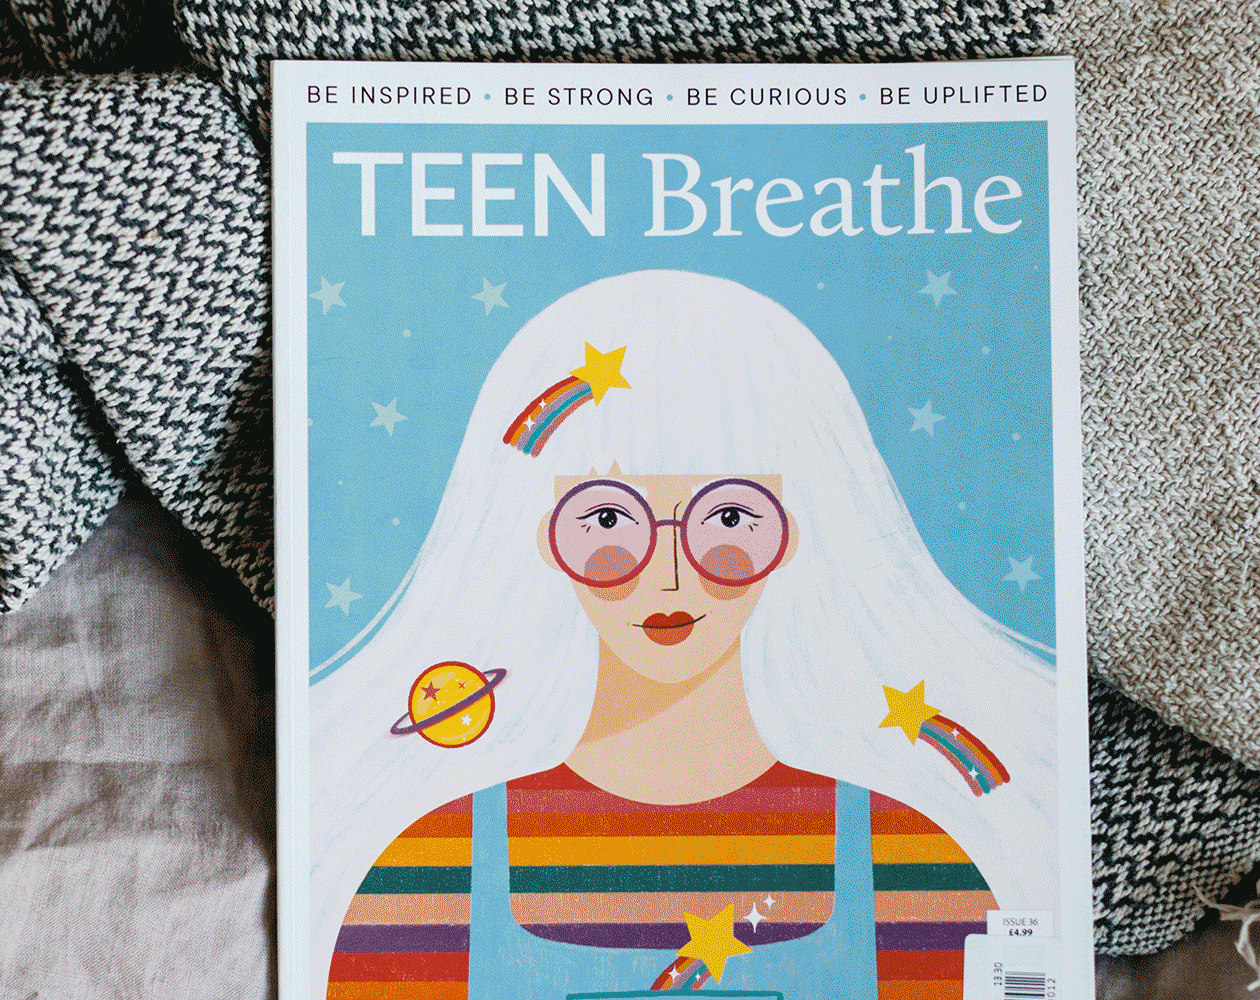 Teen Breathe. Vaimse tervise kuu. Sirvi - ajakirjade tellimine